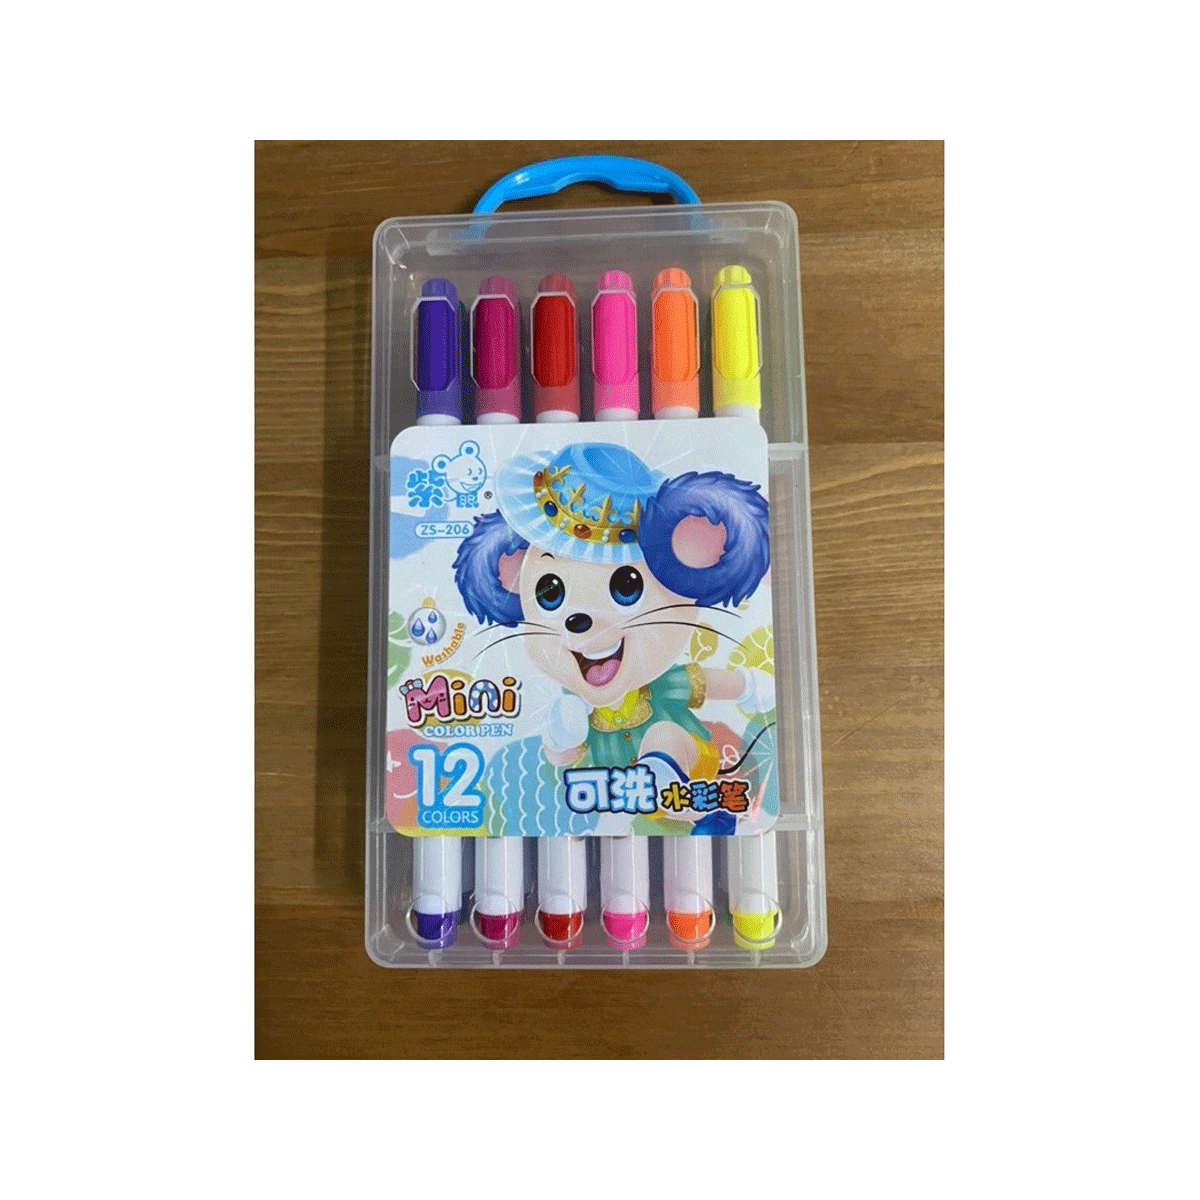 ماژیک نقاشی 12 رنگ مدل mini color pen کد zs-206